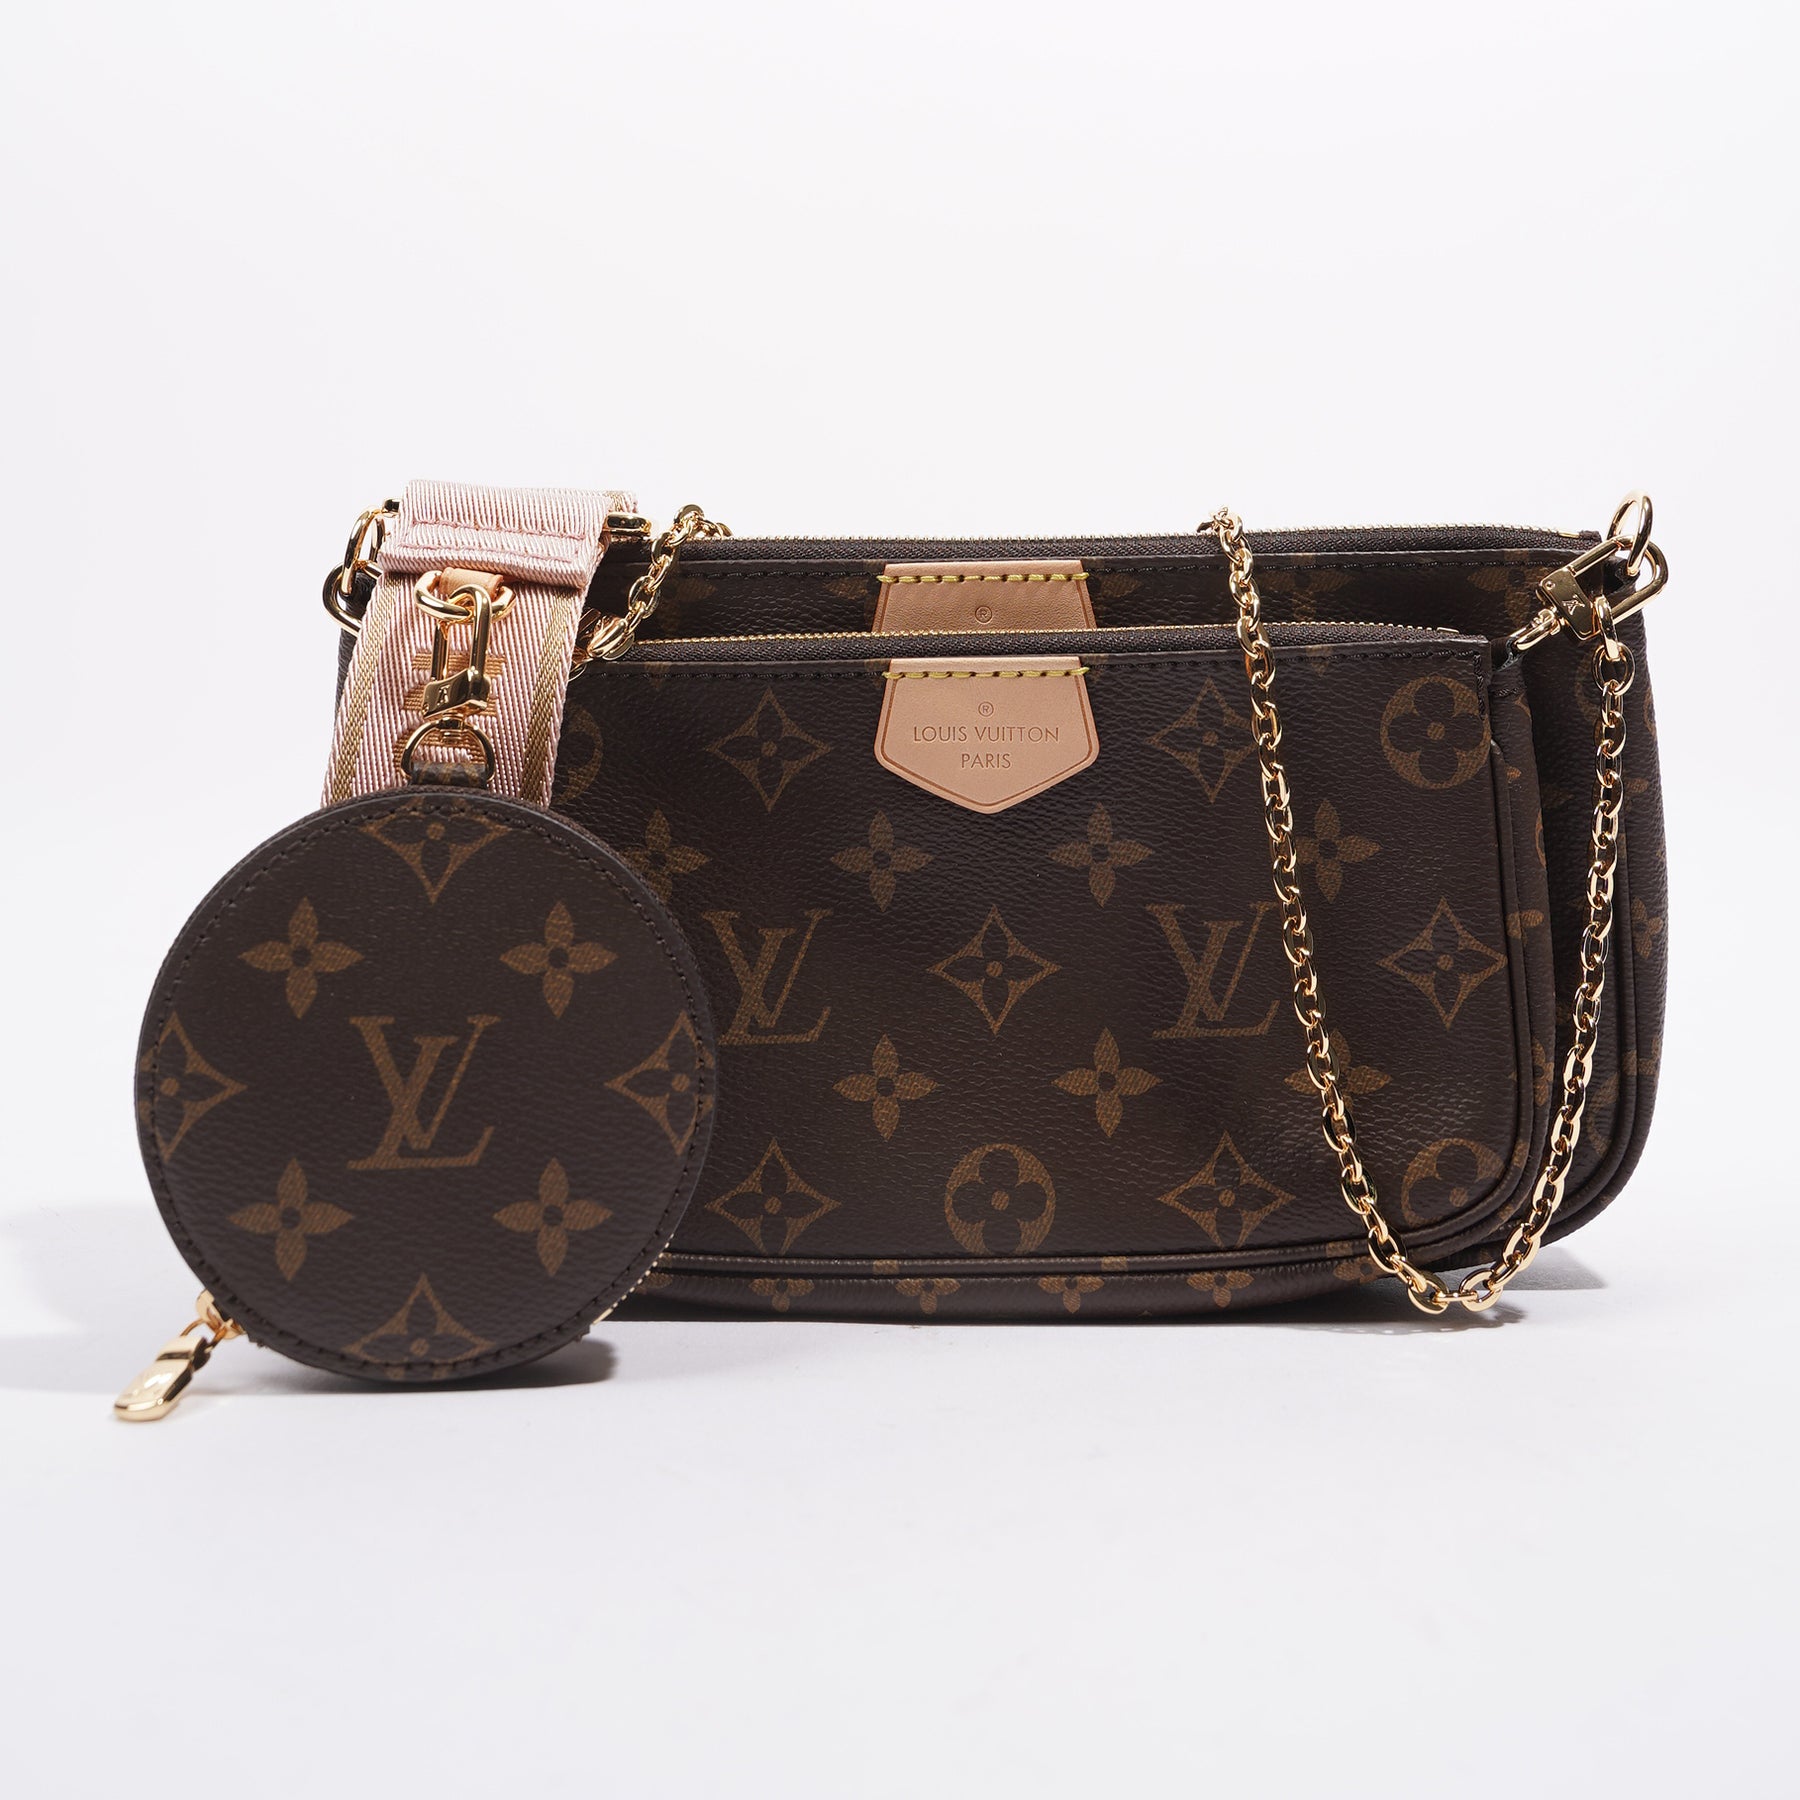 Louis Vuitton - Multi Pochette Accessoires - Black / Beige - Monogram Leather - Women - Luxury